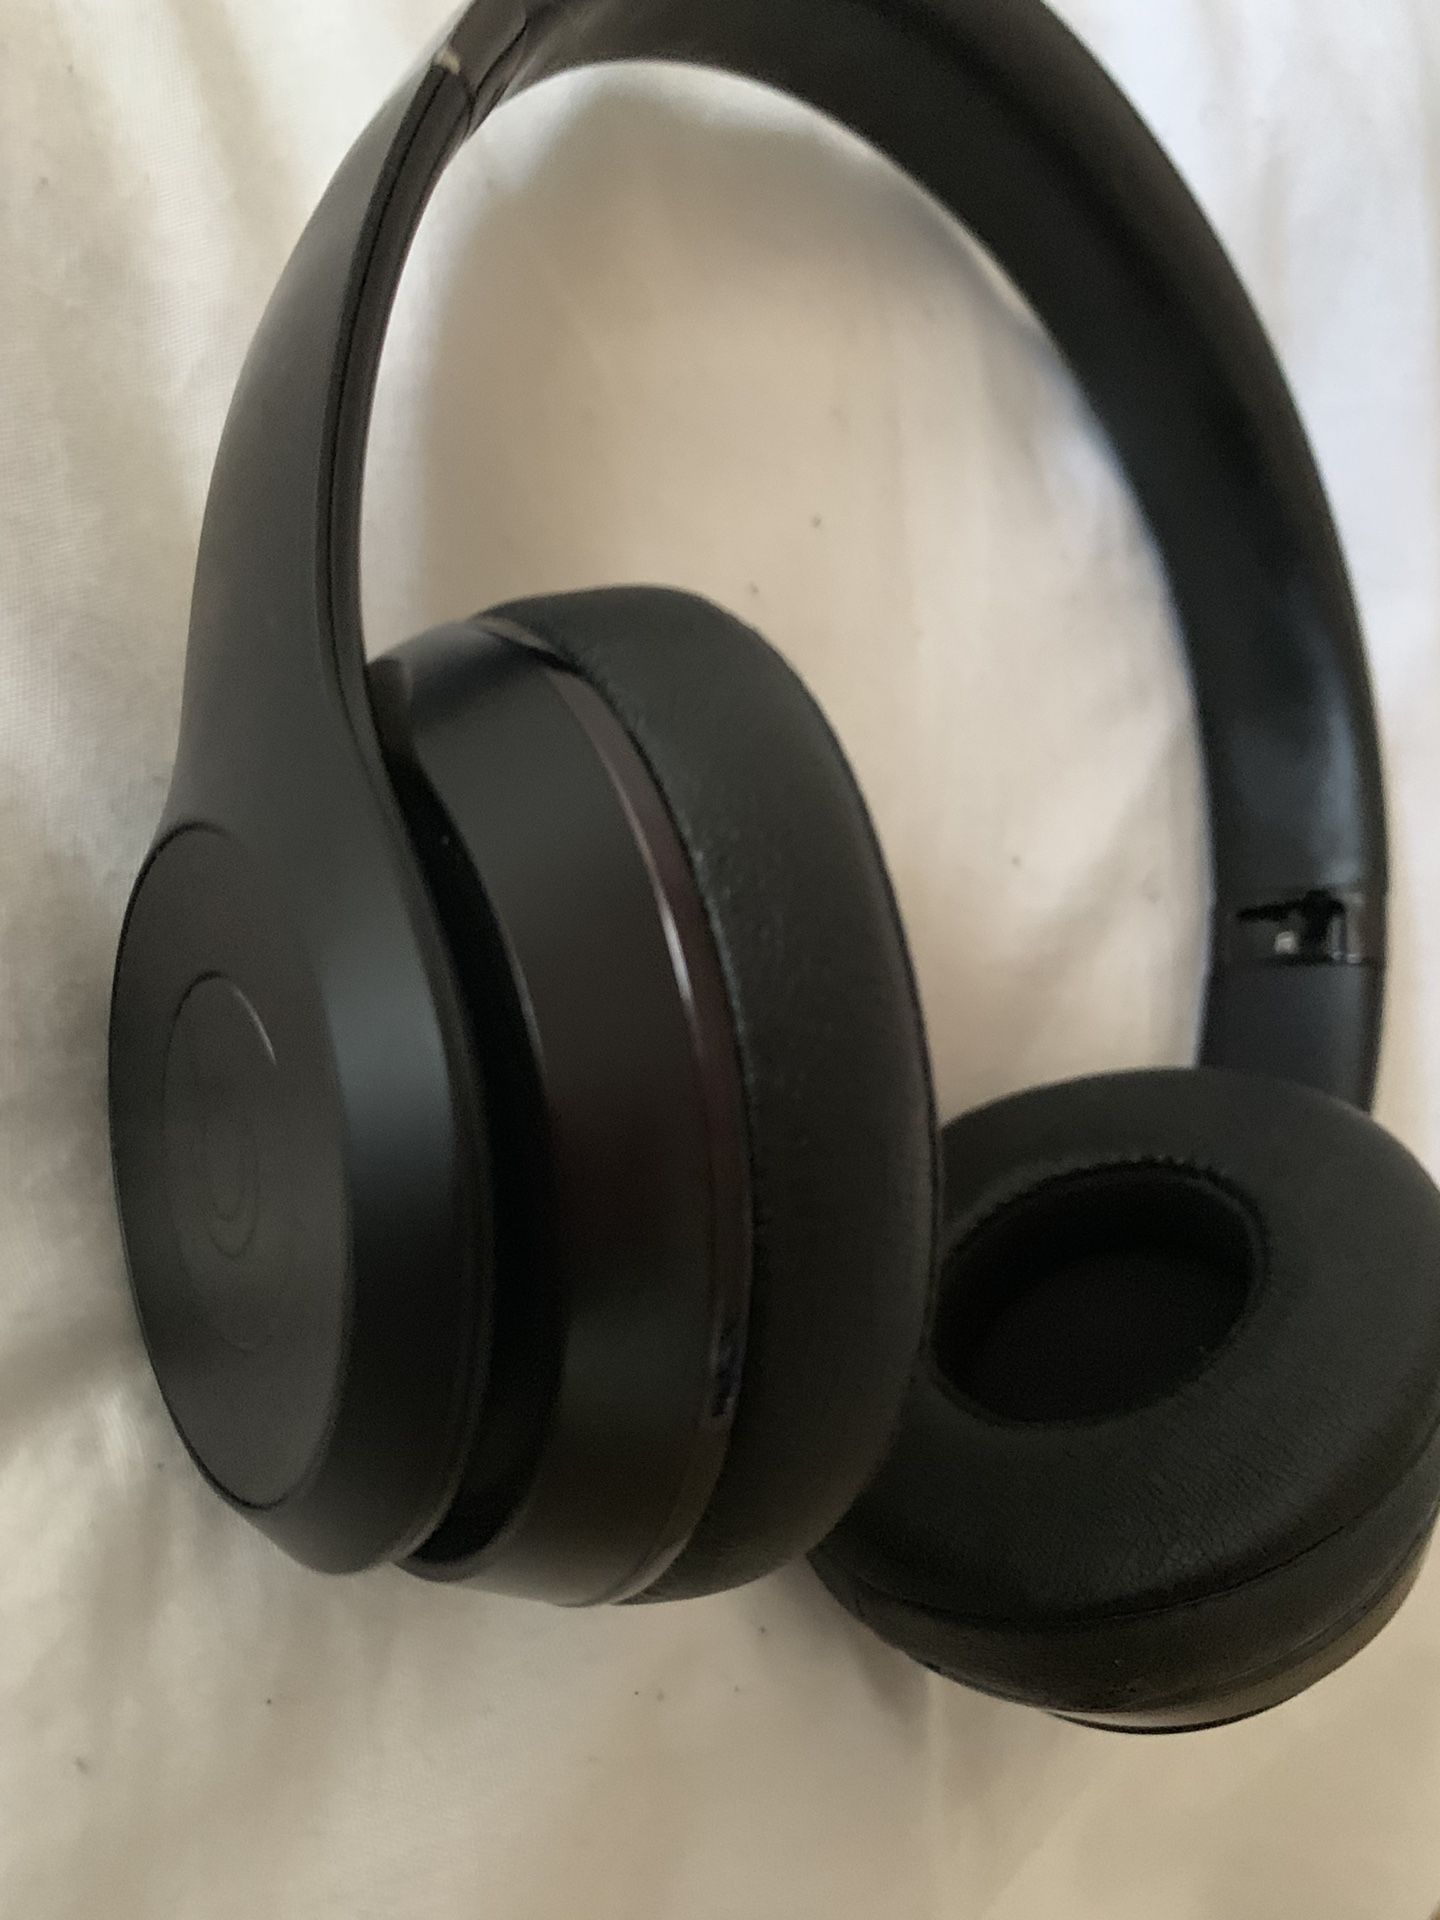 Beats Solo 3 Special Edition(Matt Black) Headphones